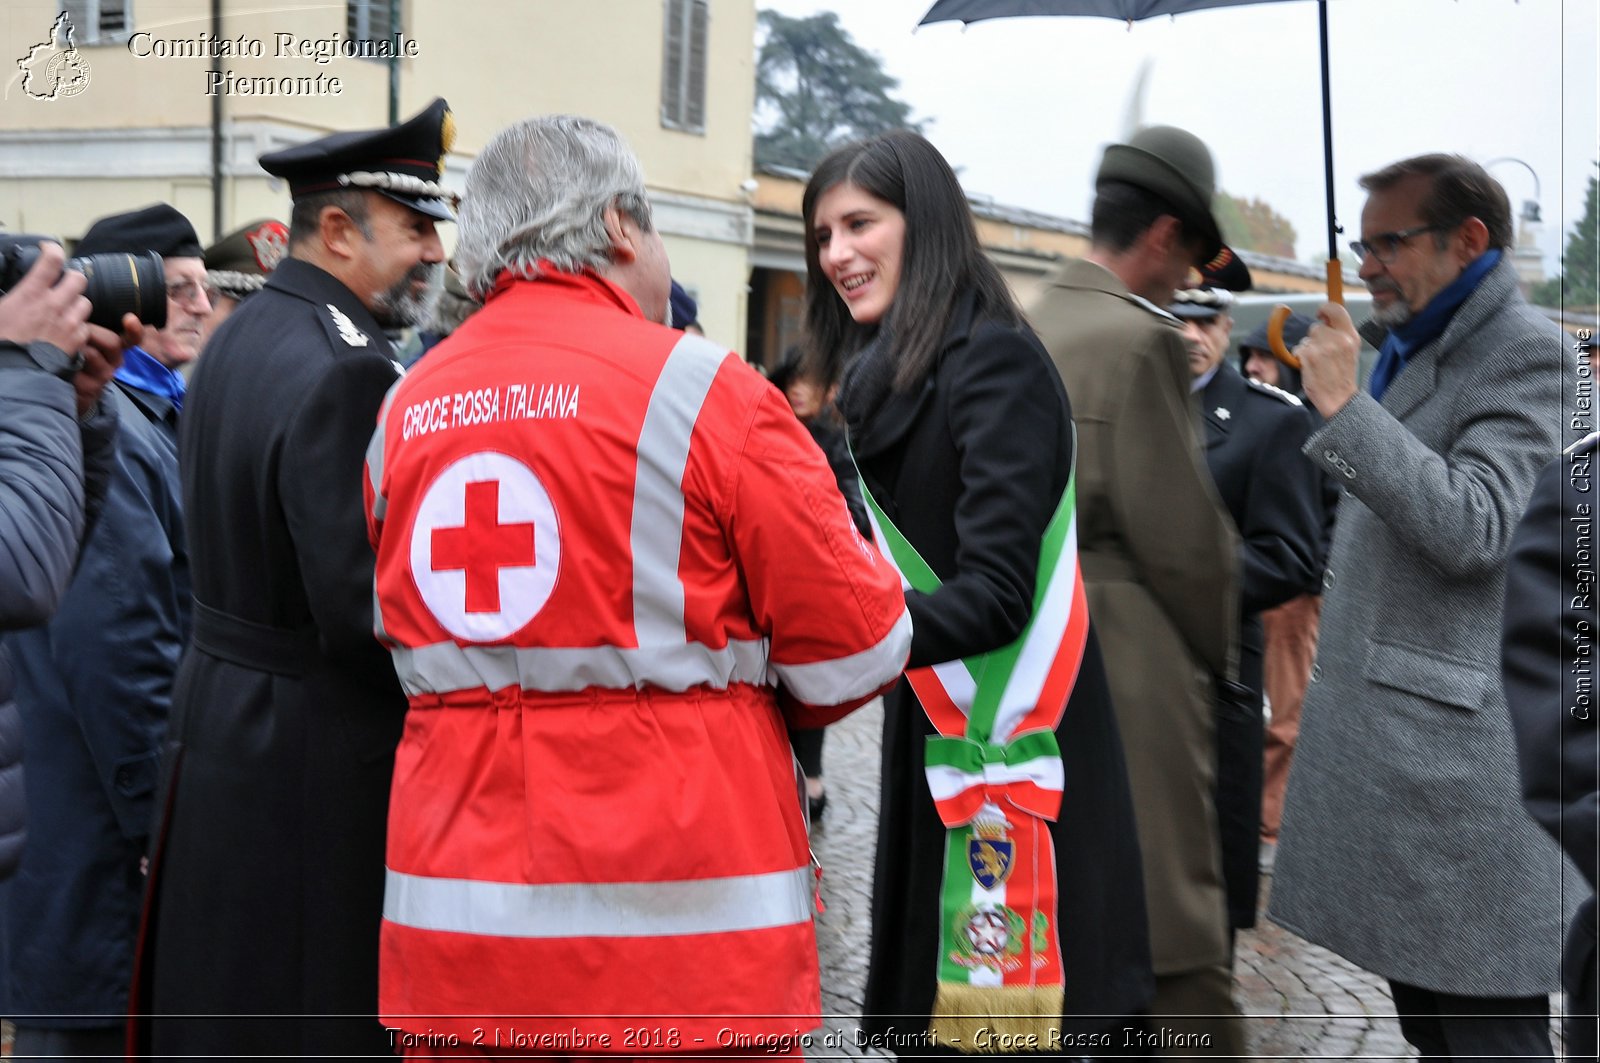 Torino 2 Novembre 2018 - Omaggio ai Defunti - Croce Rossa Italiana- Comitato Regionale del Piemonte